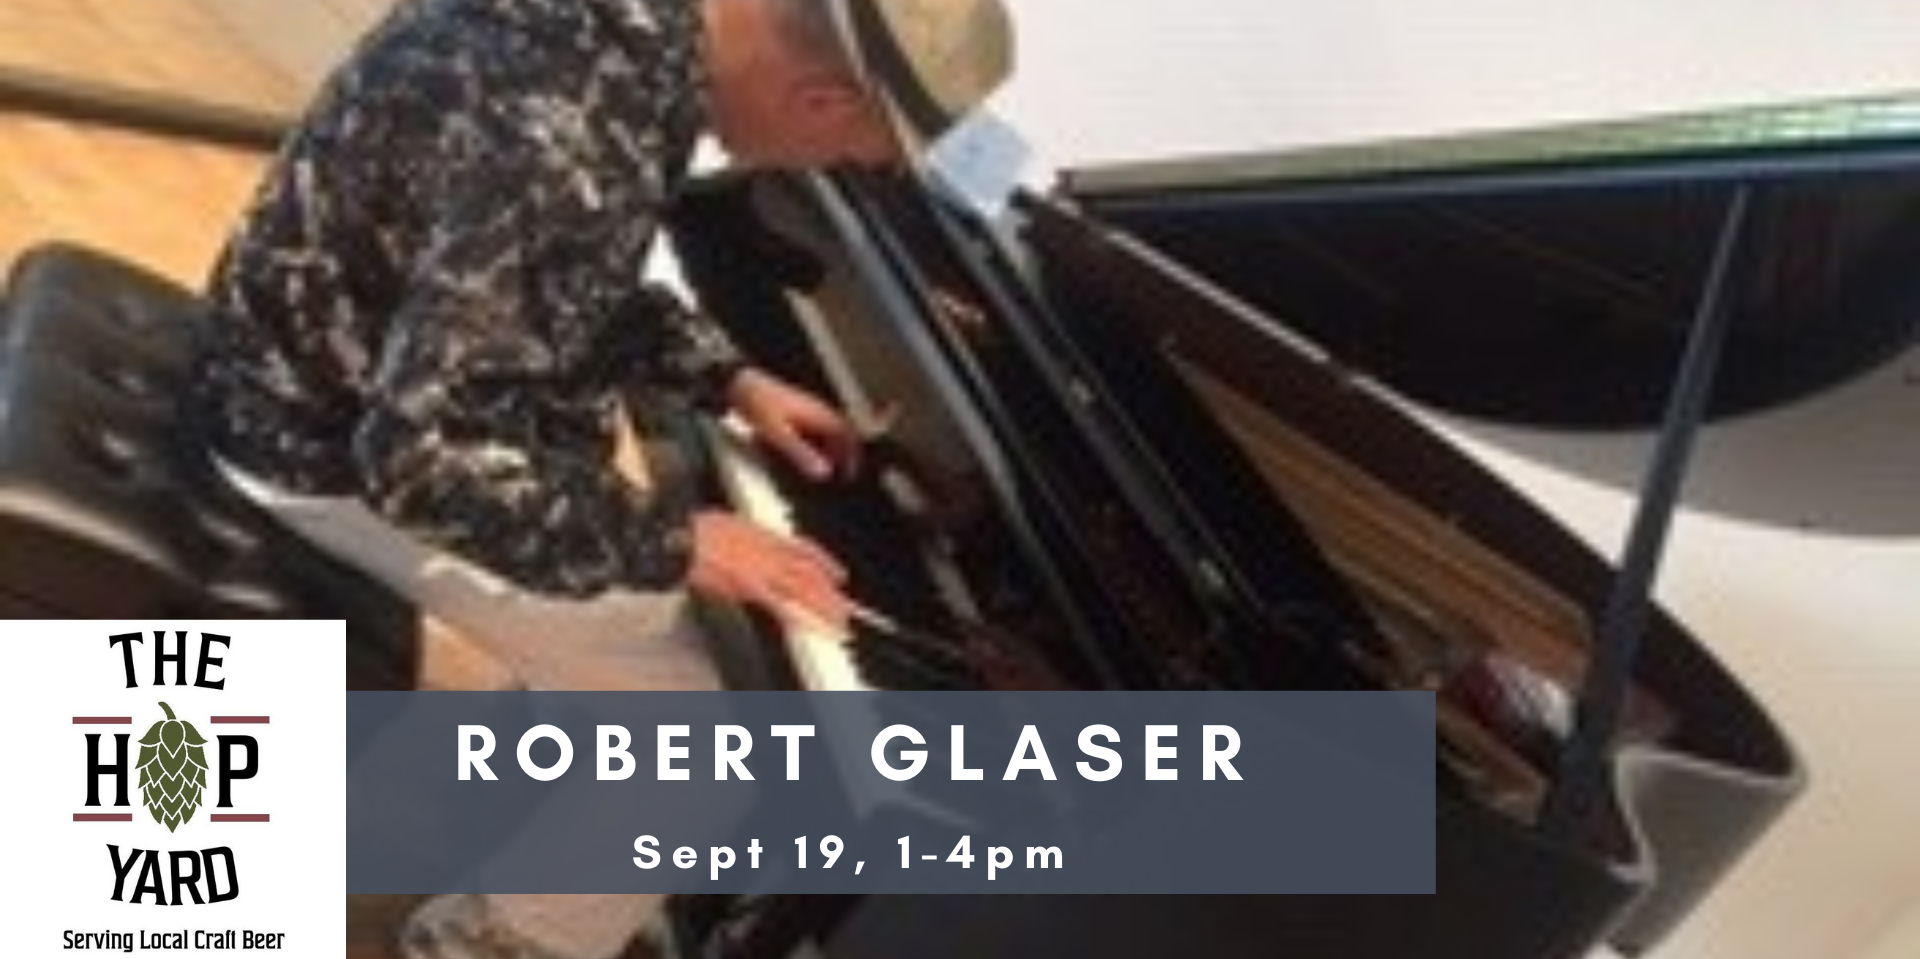 Robert Glaser promotional image